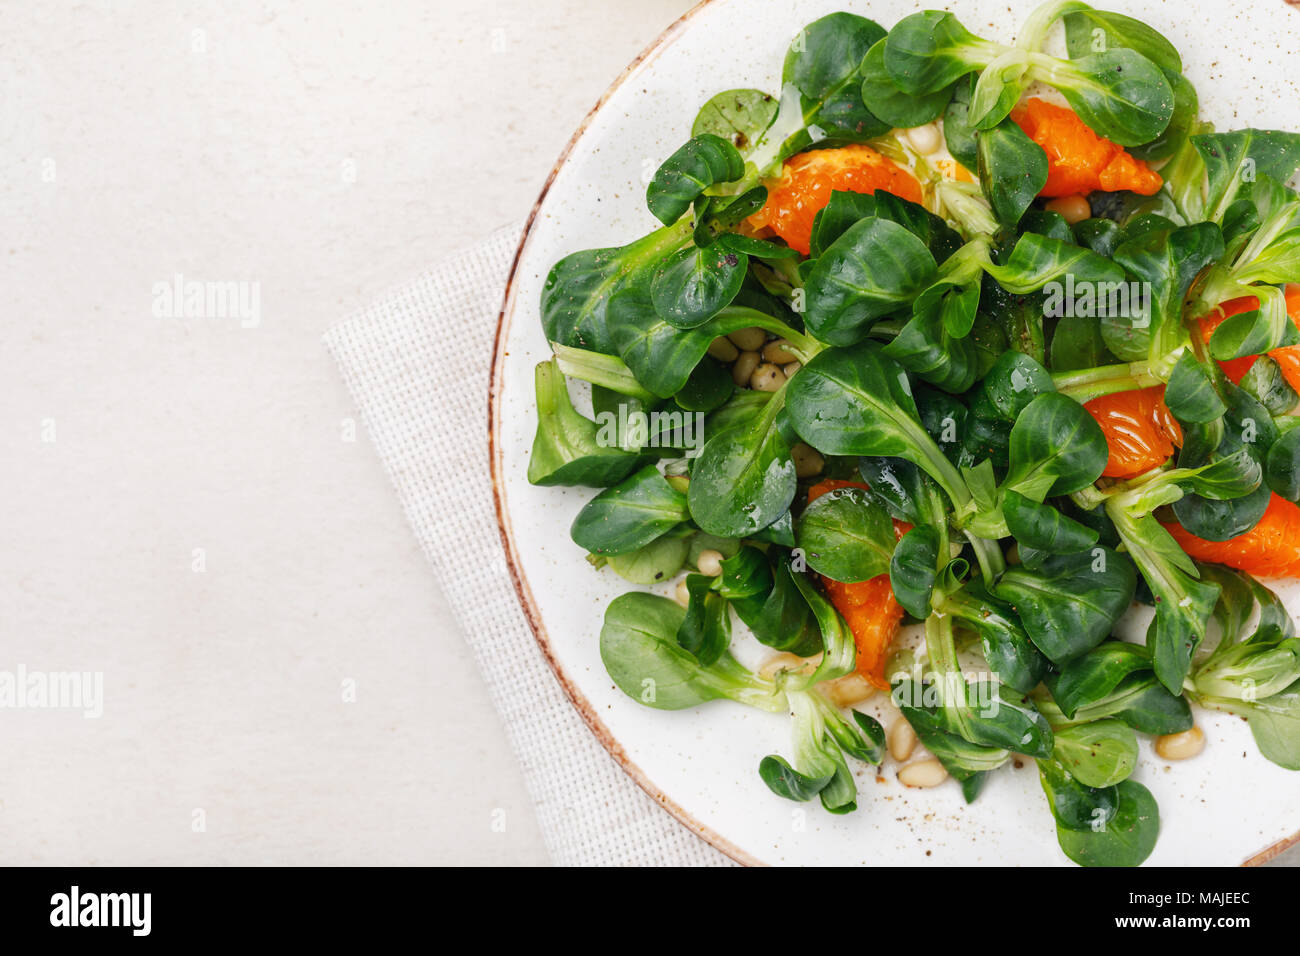 Korn délicate salade avec des noix de pin et de mandarine. Vue de dessus de la nourriture avec un espace réservé au texte Banque D'Images